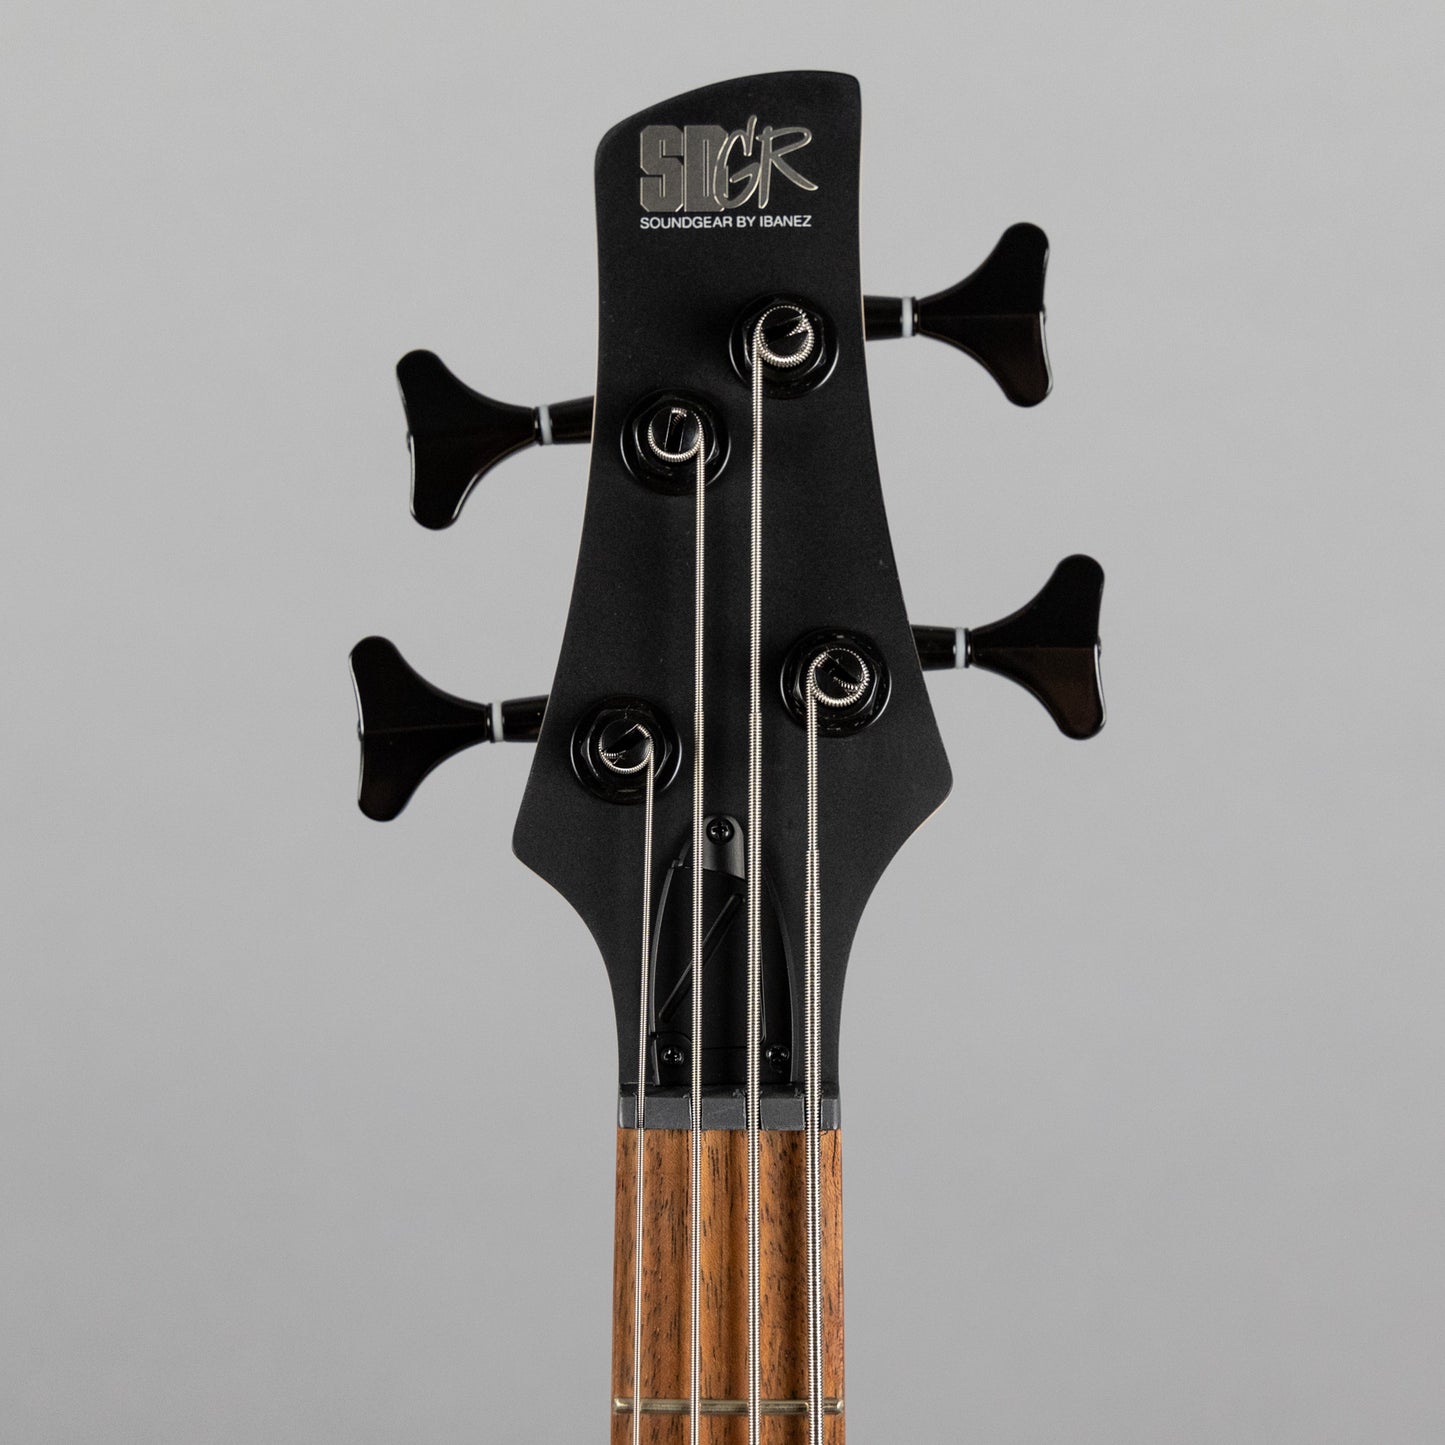 Ibanez SR300EBL Left-Handed 4-String Bass in Weathered Black